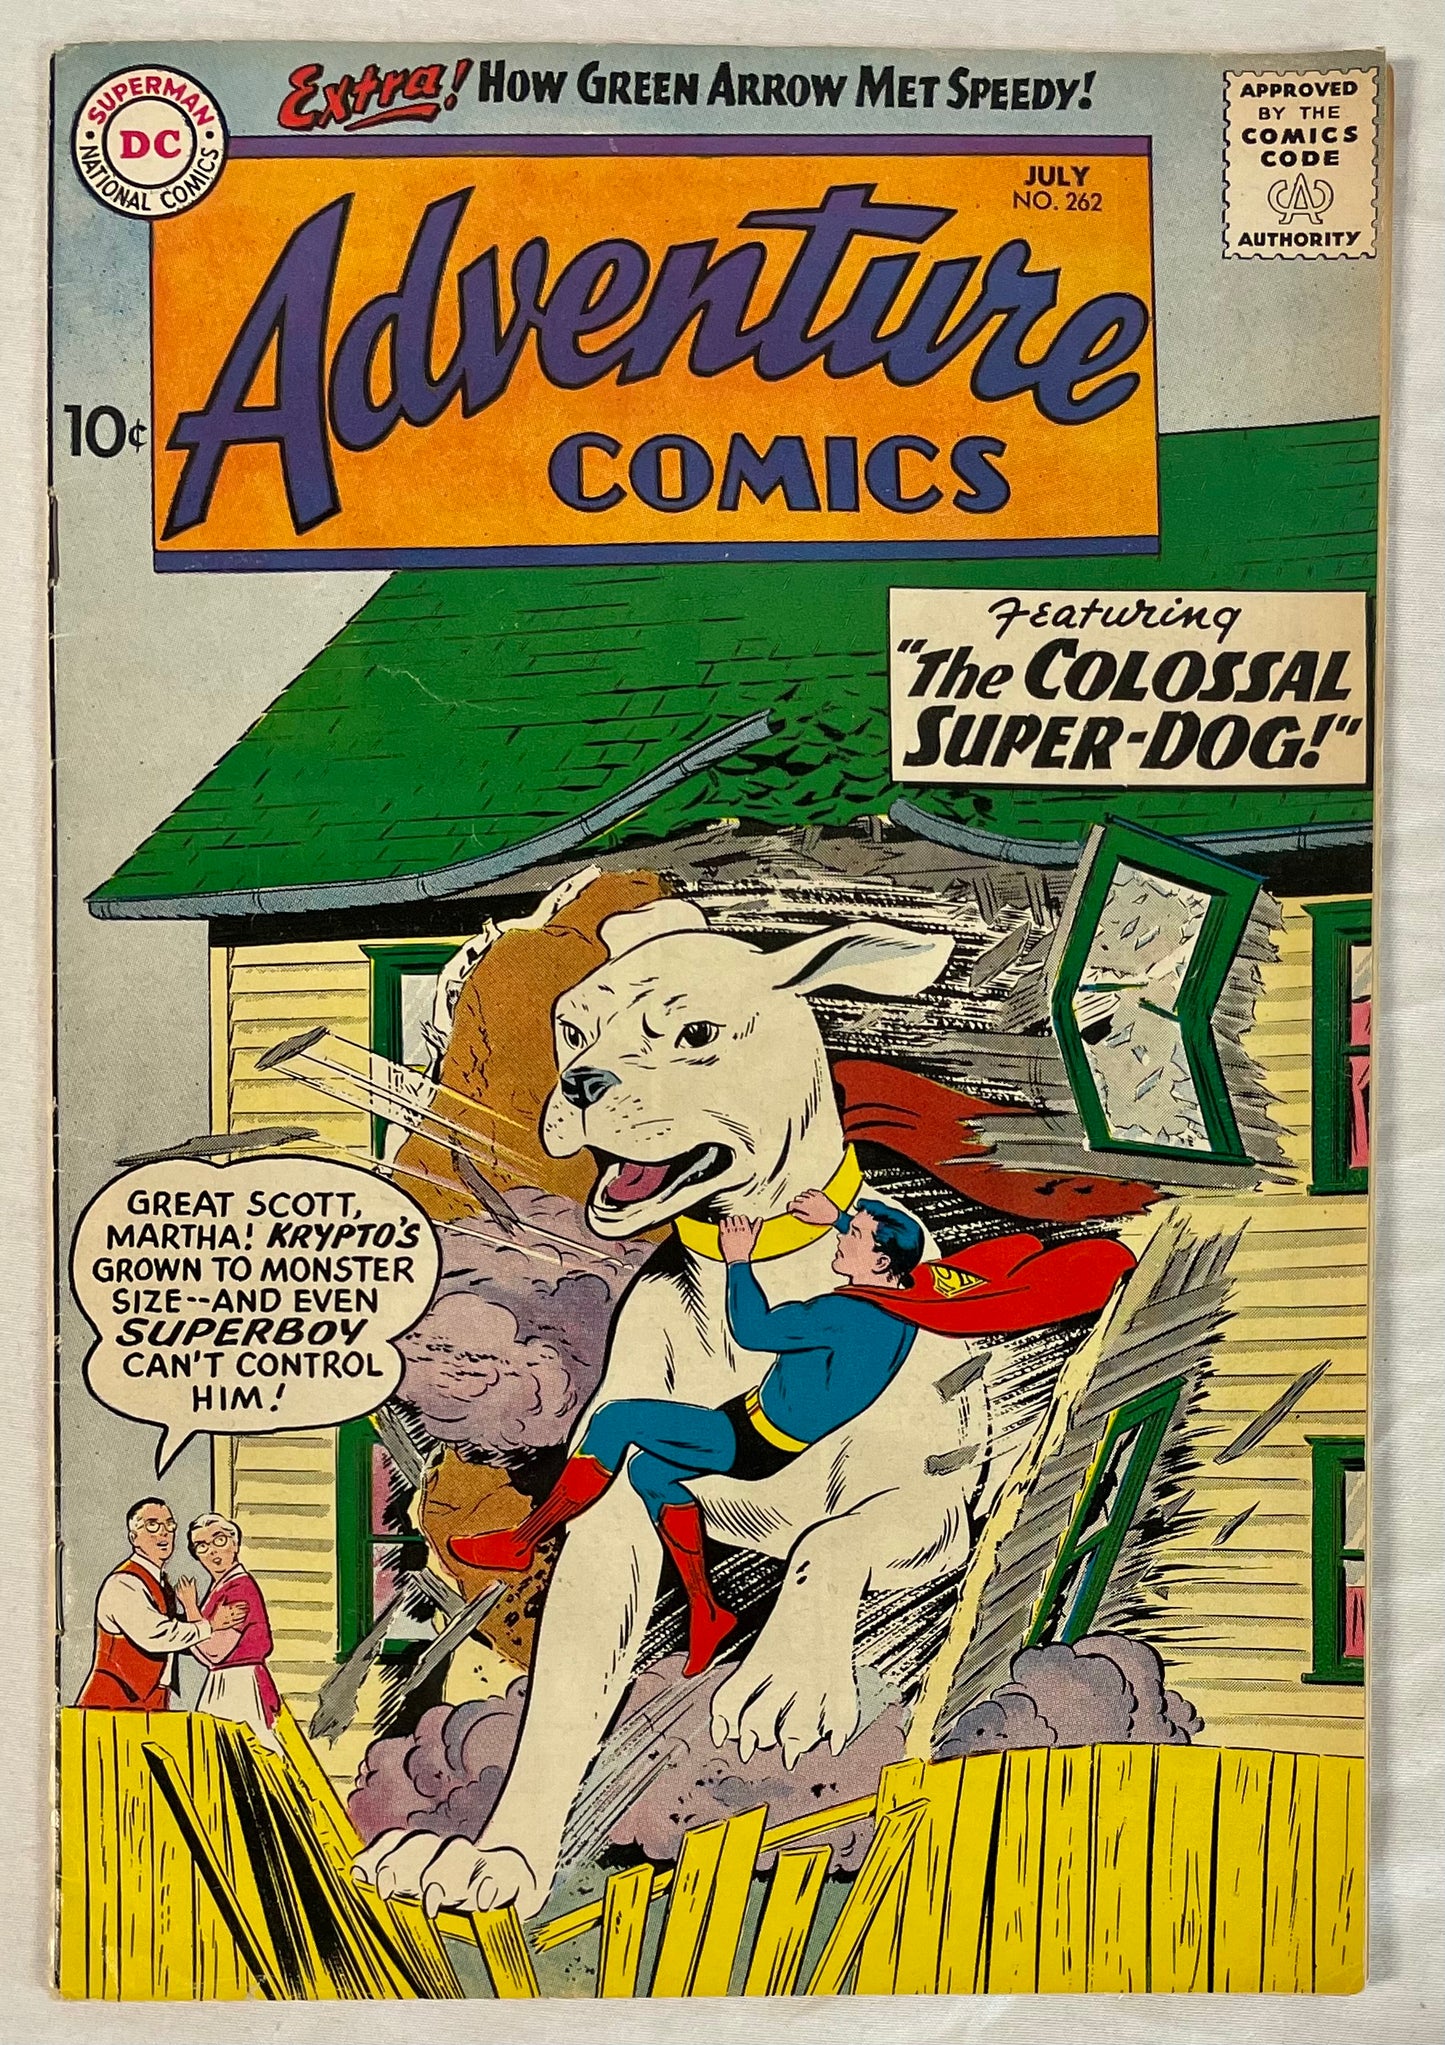 DC Comics Adventure Comics No. 262